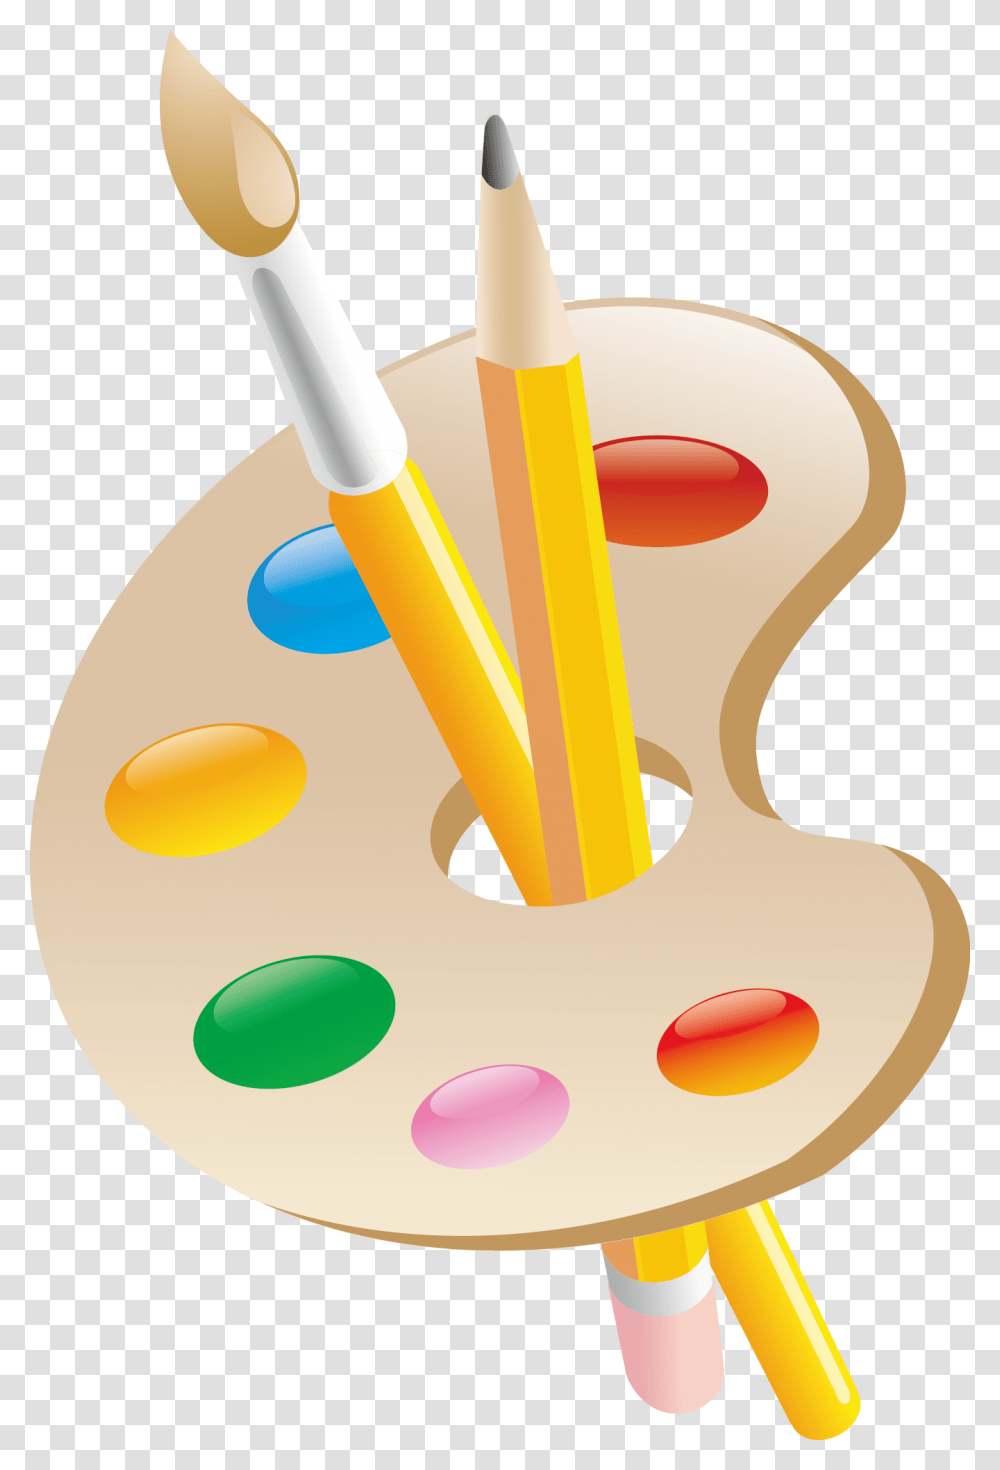 Vase Painting Clipart Paintclip, Paint Container, Palette, Brush, Tool Transparent Png